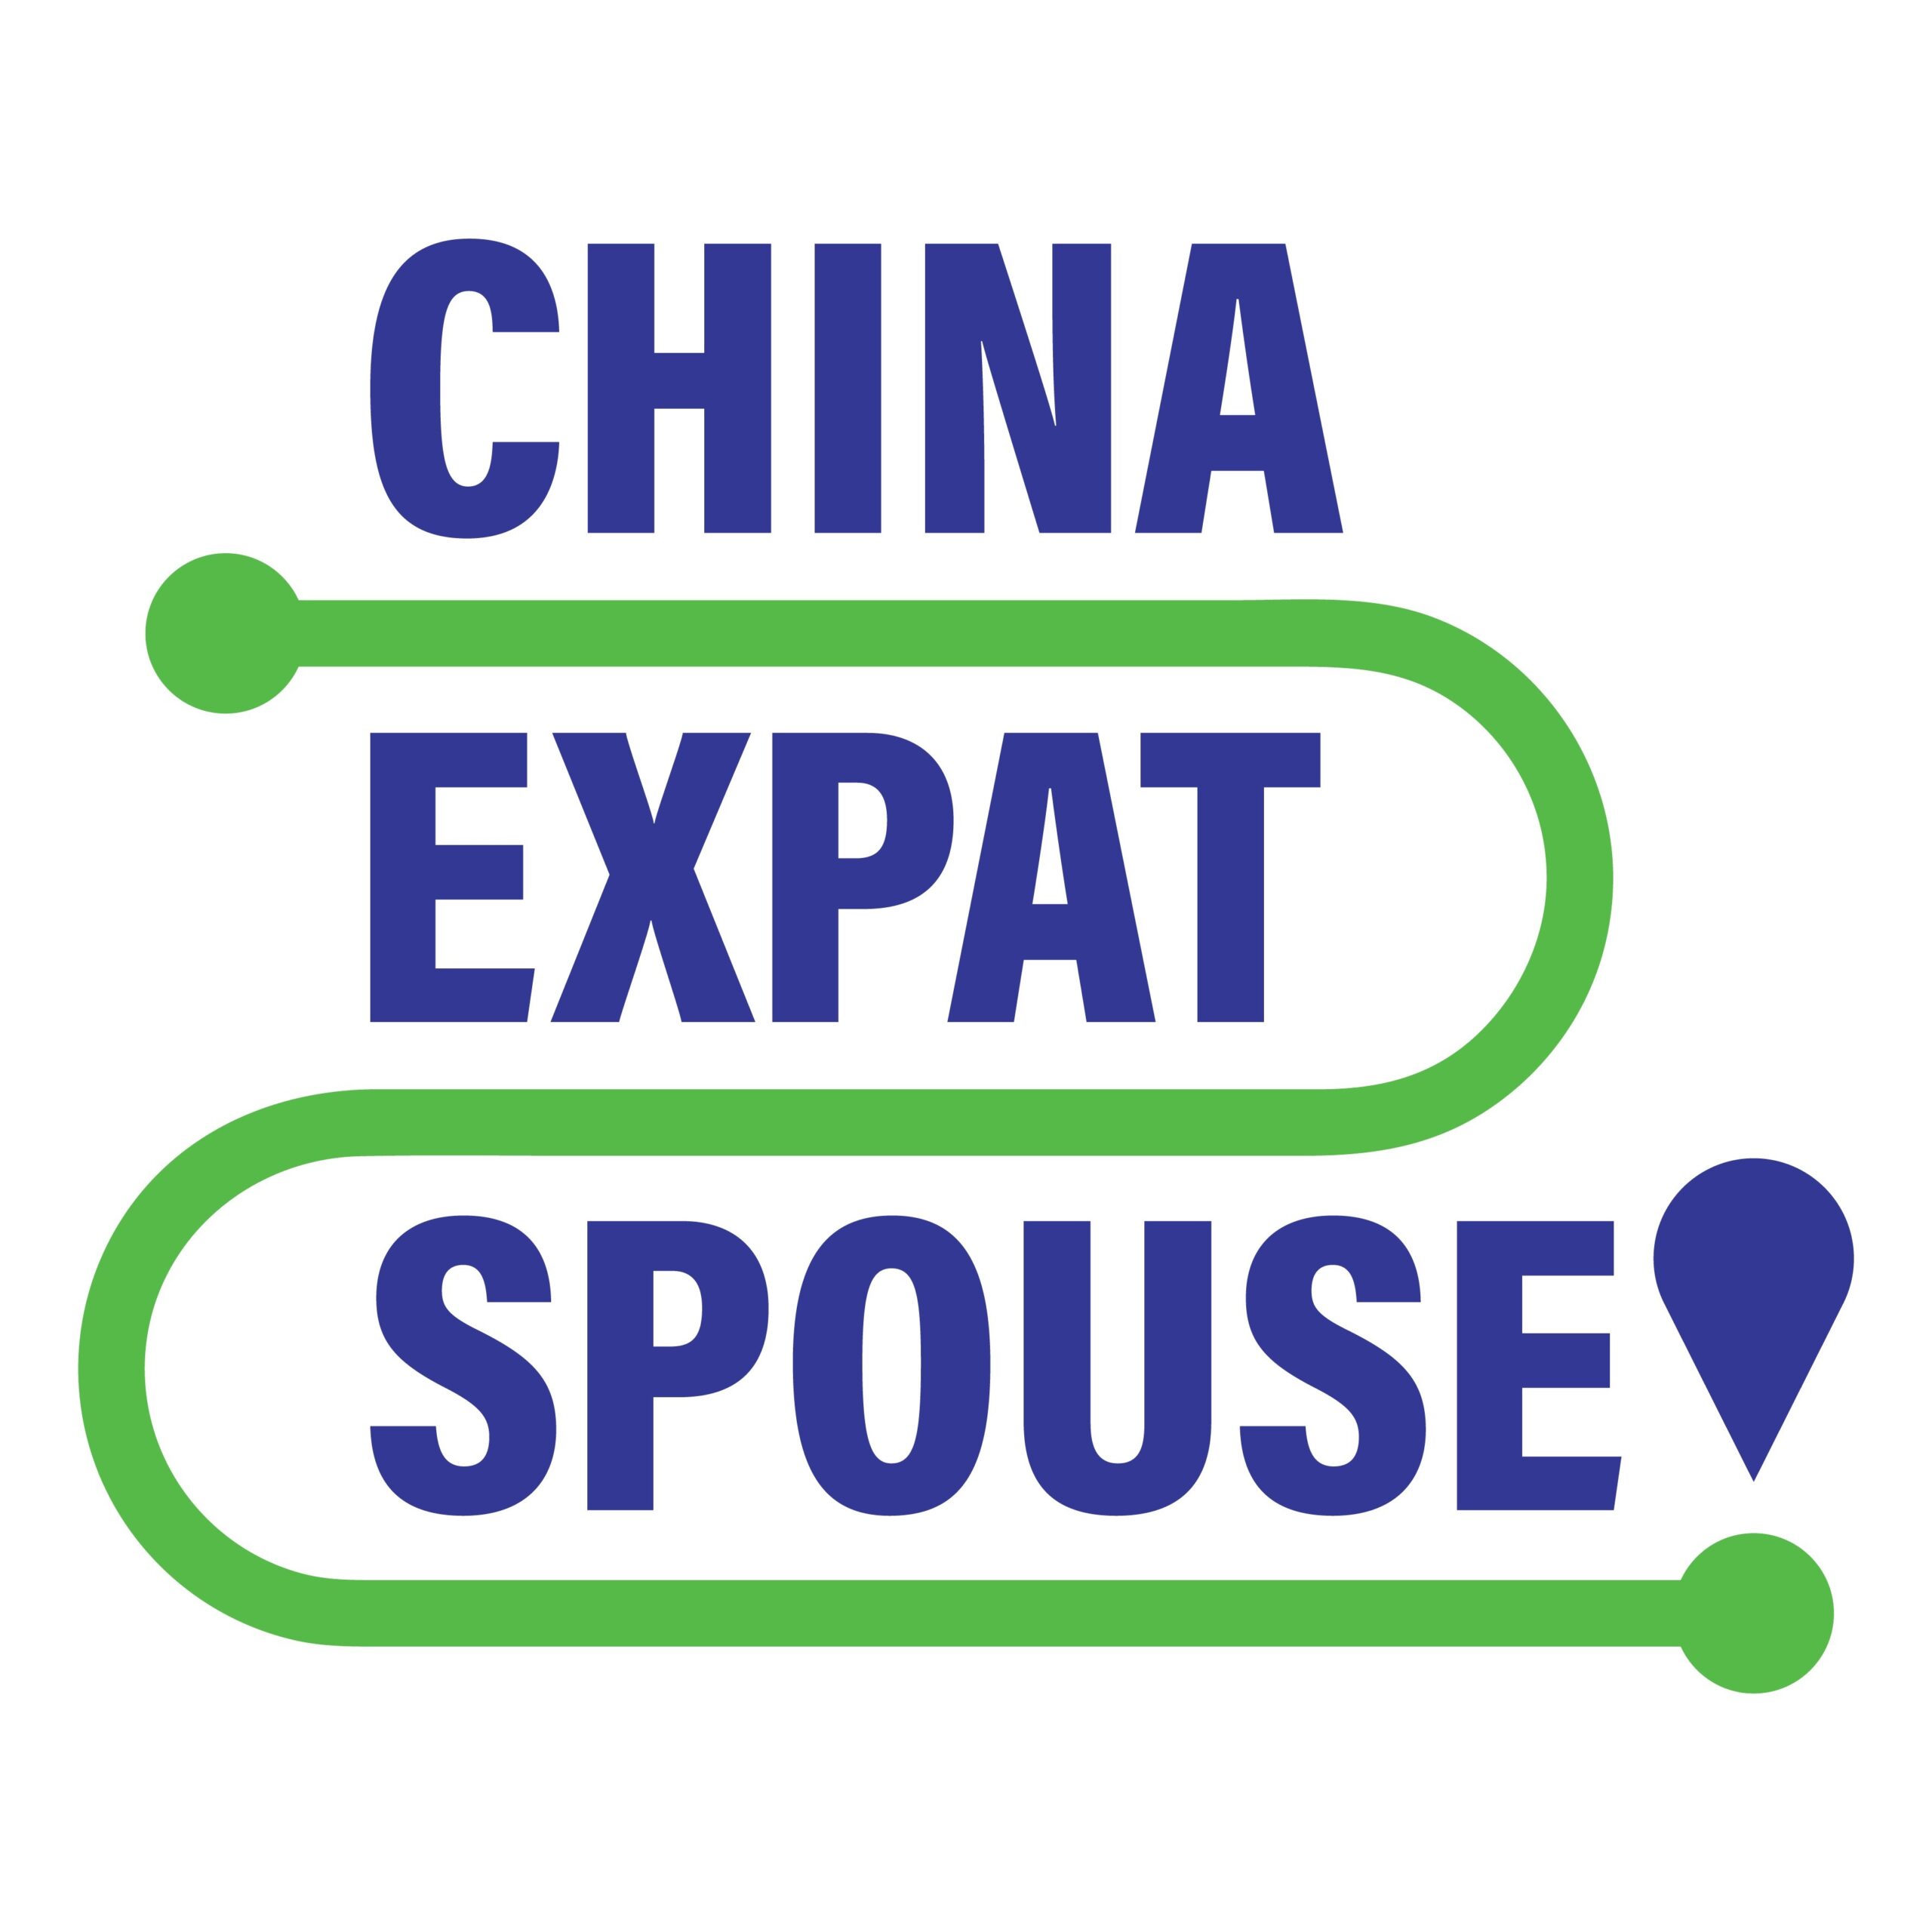 China Expat Spouse